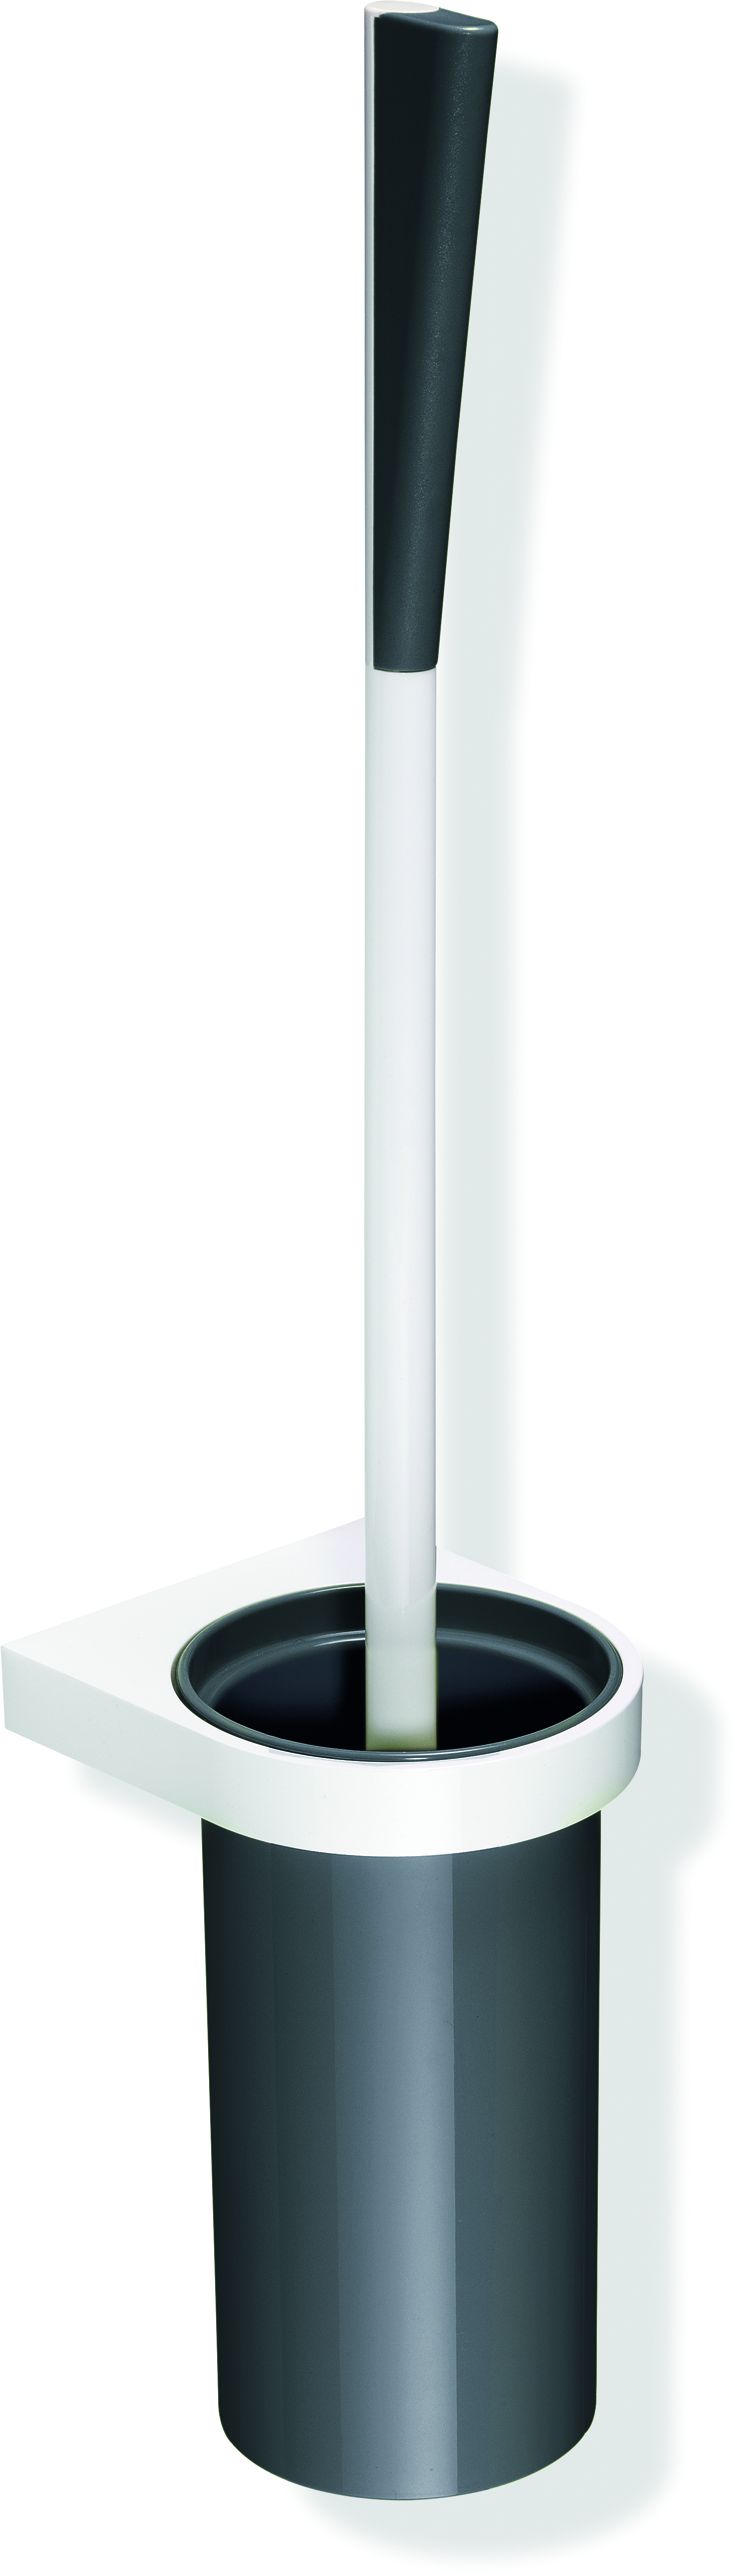 Hewi System 800 K Toilettenbürstengarnitur 800.20.2009950 Behälter Kunststoff, Halter und Bürstenstiel reinweiß, stahlblau